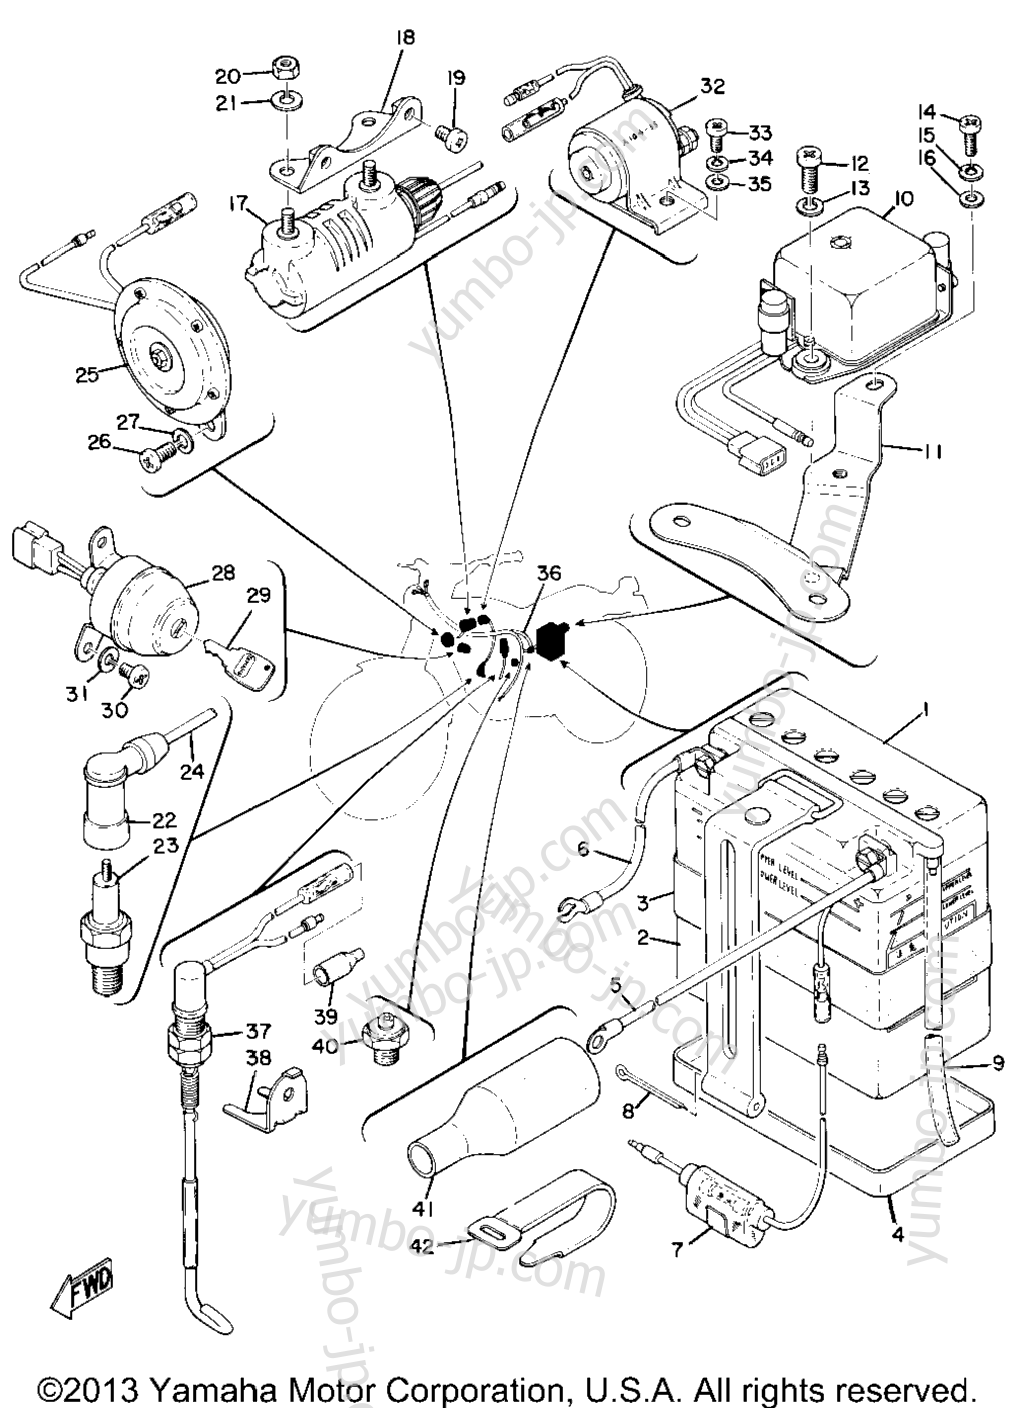 Electrical (At1-B) for motorcycles YAMAHA AT1B 1970 year